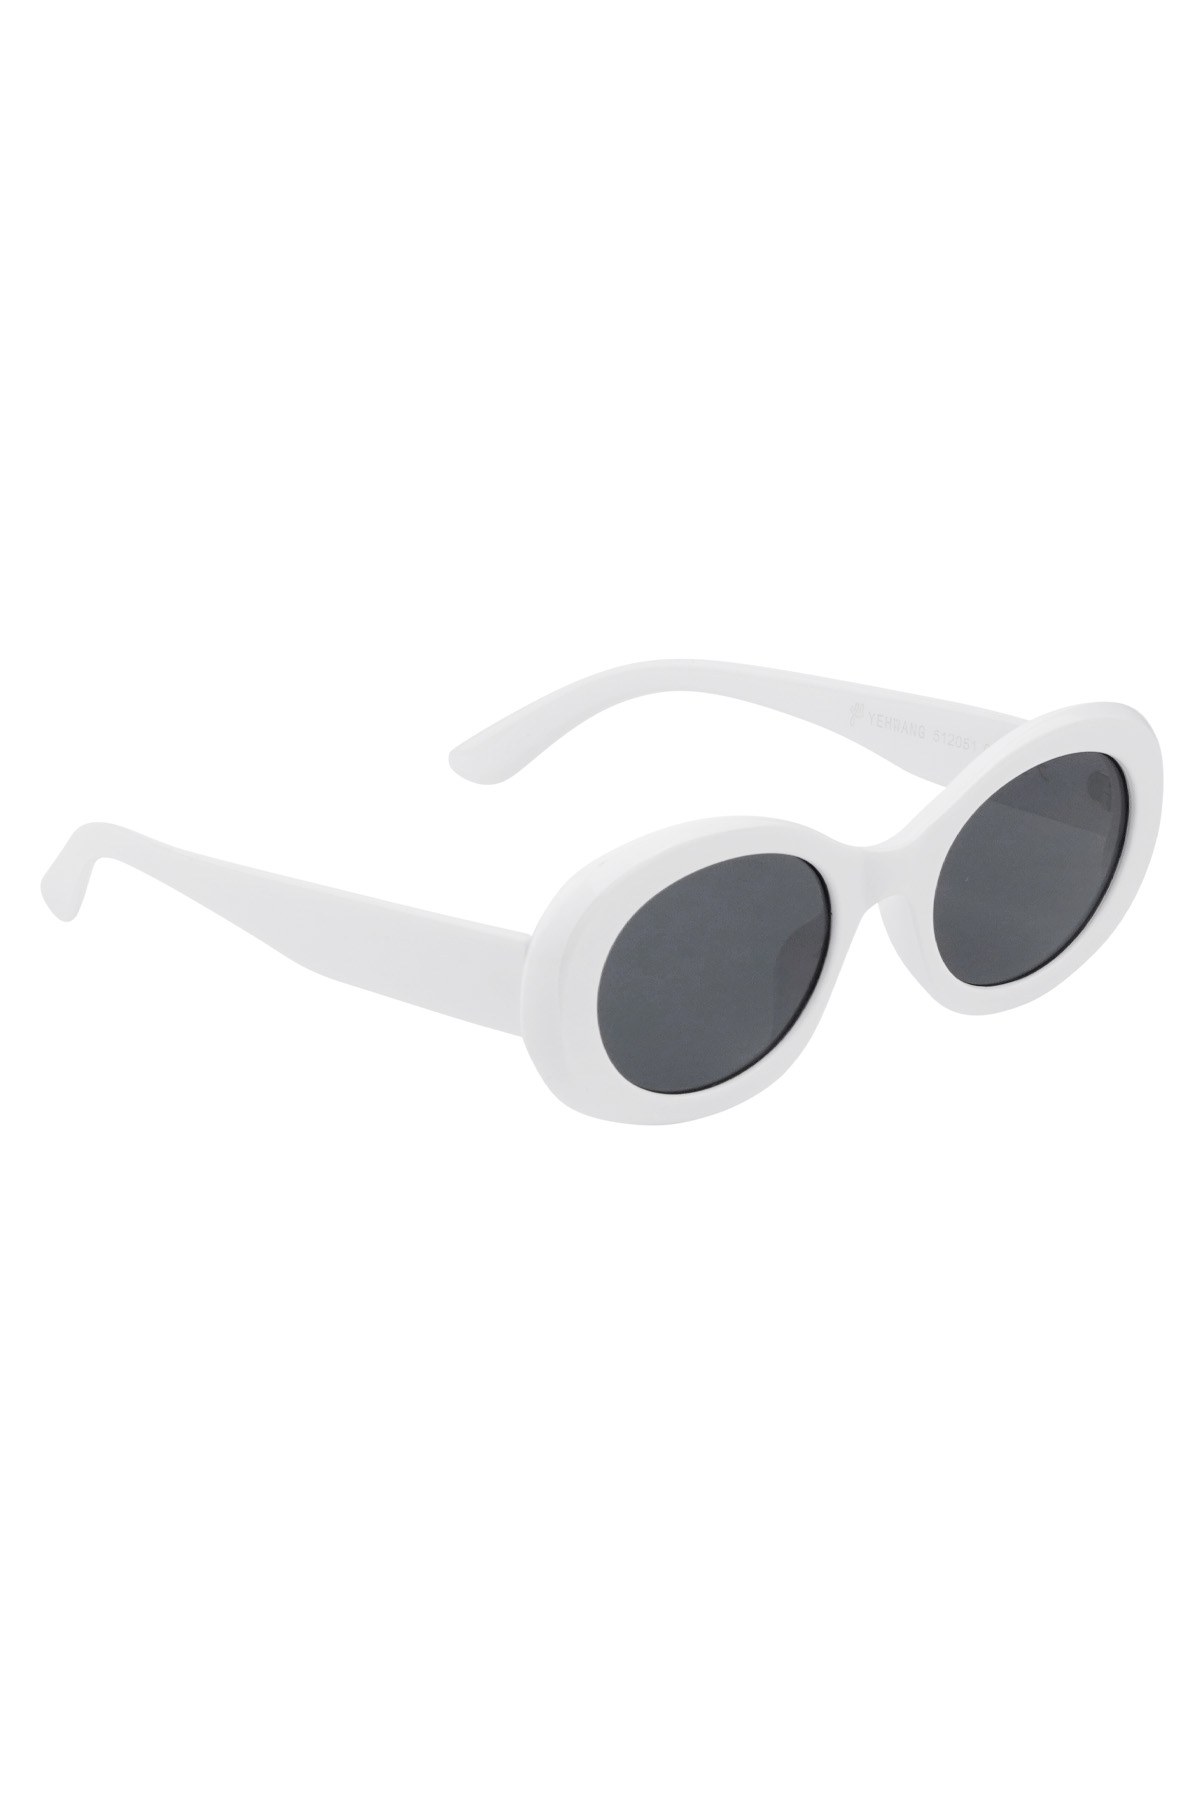 Sonnenbrillen sehen edel aus wie – weiß